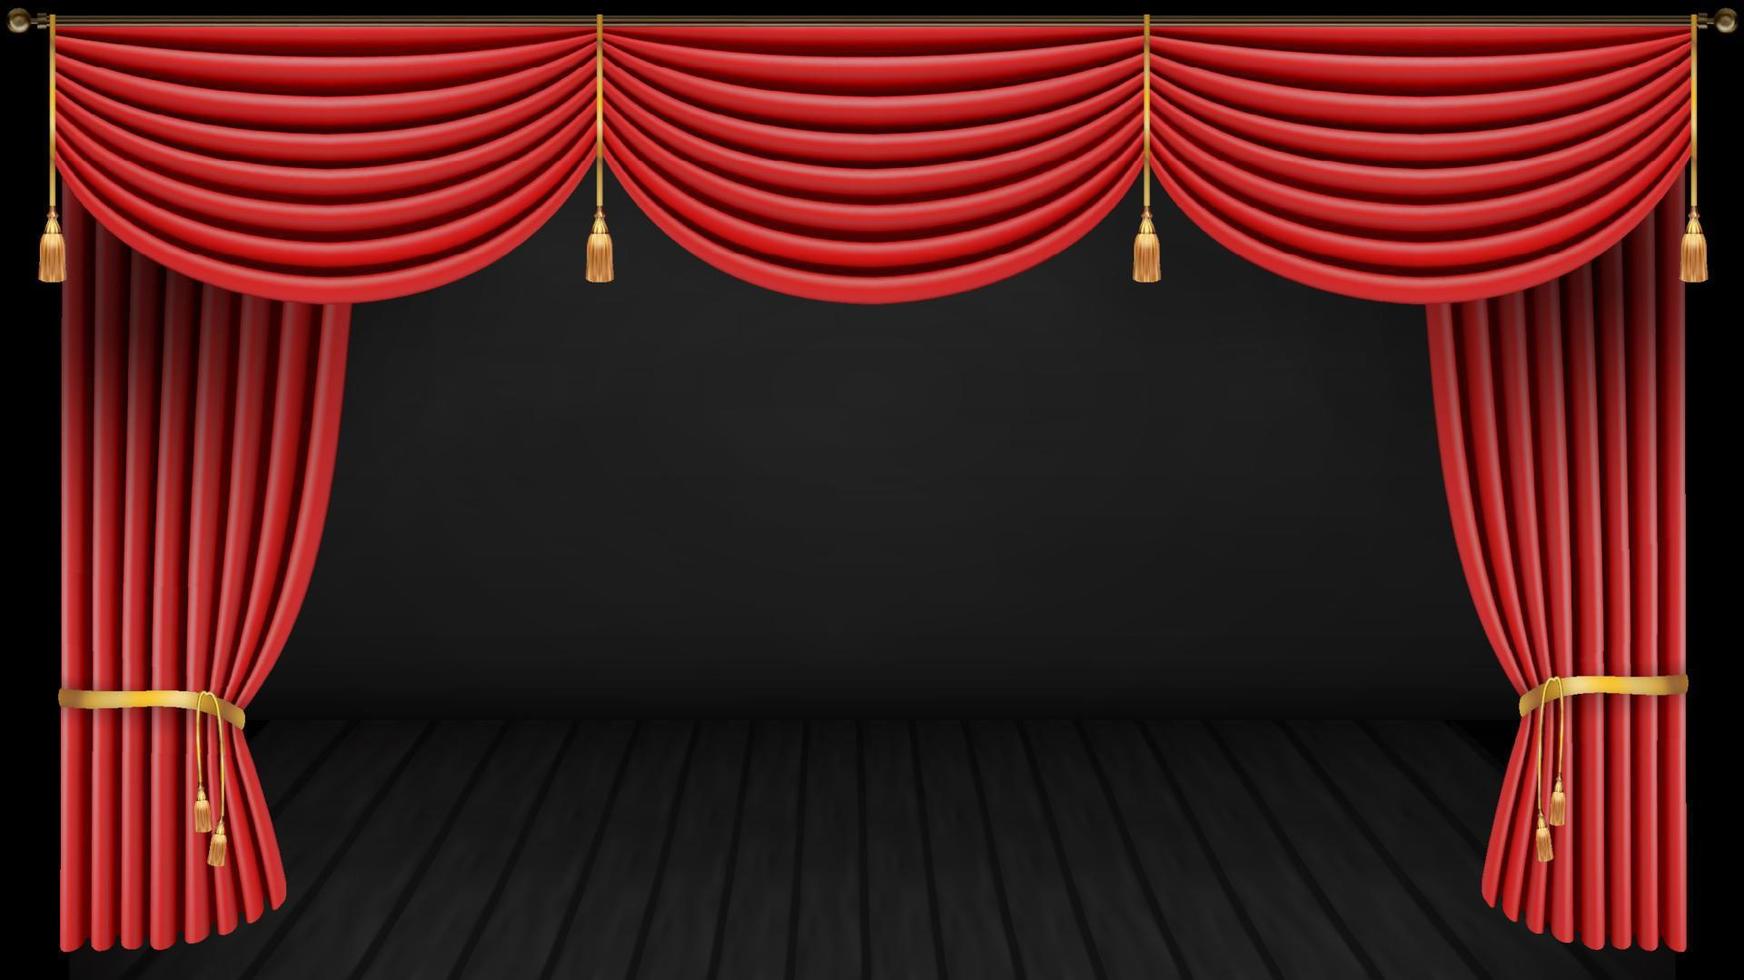 escenario de teatro con cortina roja cortina roja y suelo de madera. ilustración vectorial vector